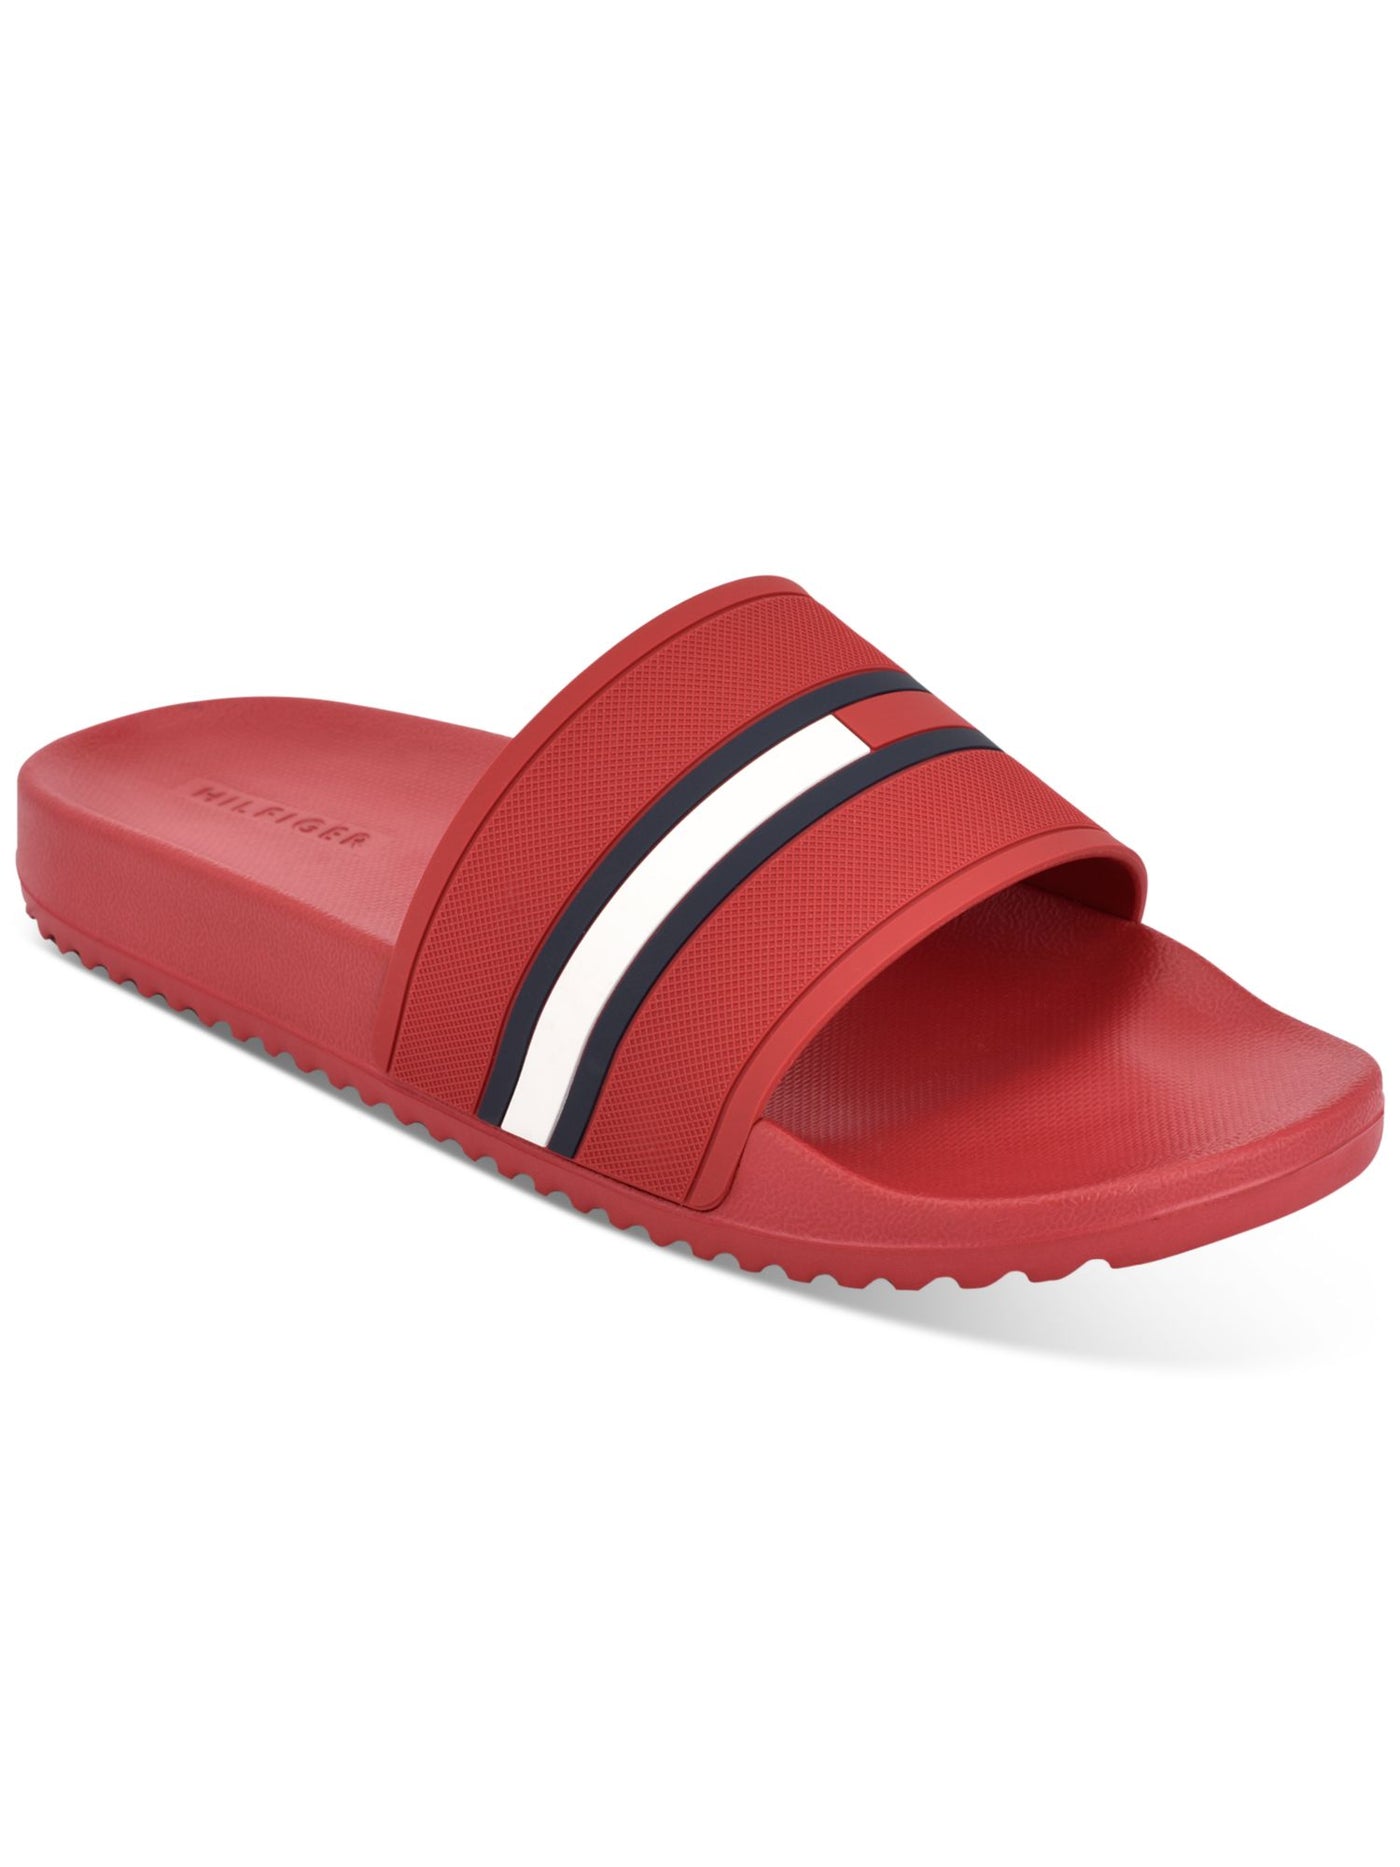 TOMMY HILFIGER Mens Red Comfort Redder Round Toe Slip On Slide Sandals Shoes 11 M